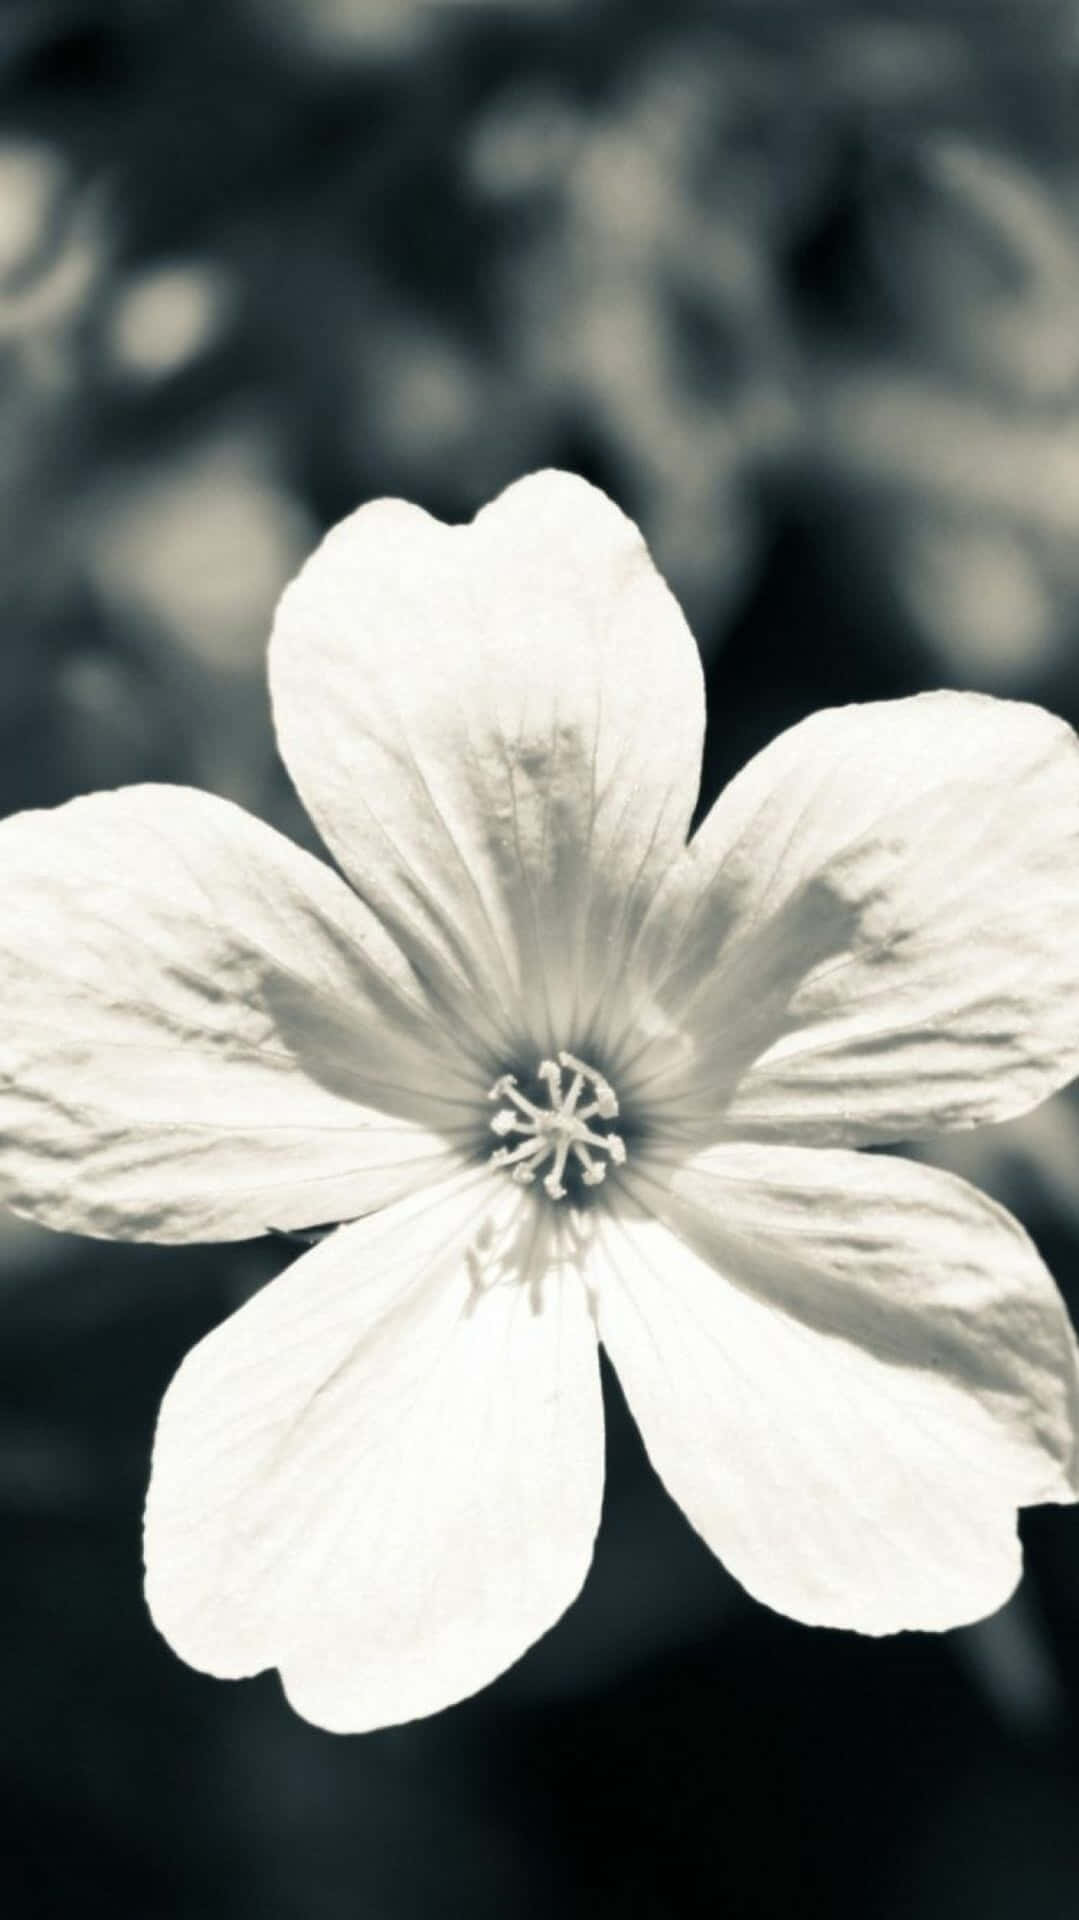 Umaflor Preta E Branca Requintada Em Plena Floração, Mostrando A Beleza Da Natureza. Papel de Parede